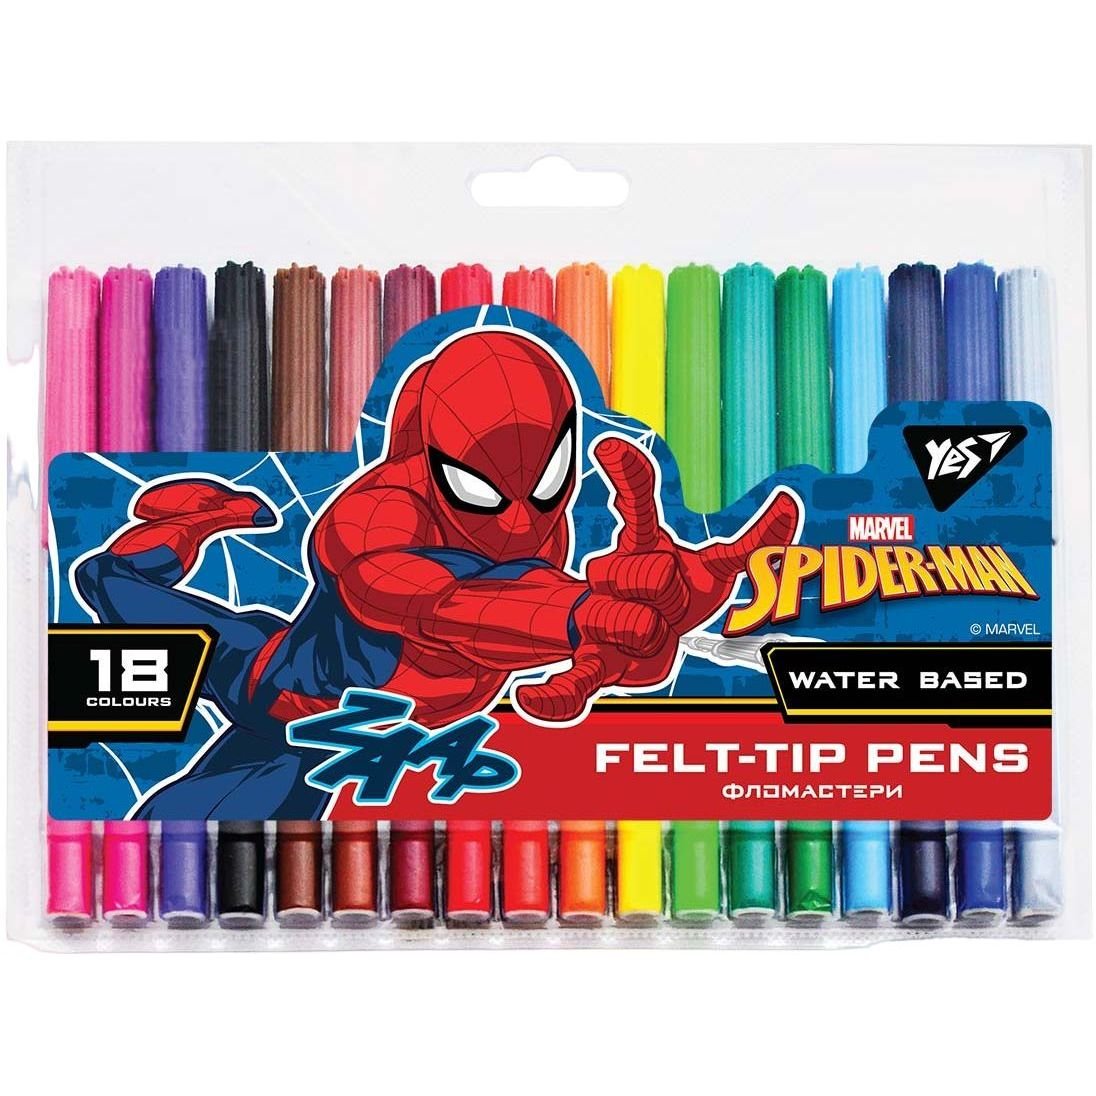 Фломастери Yes Marvel Spiderman, 18 кольорів (650497) - фото 1